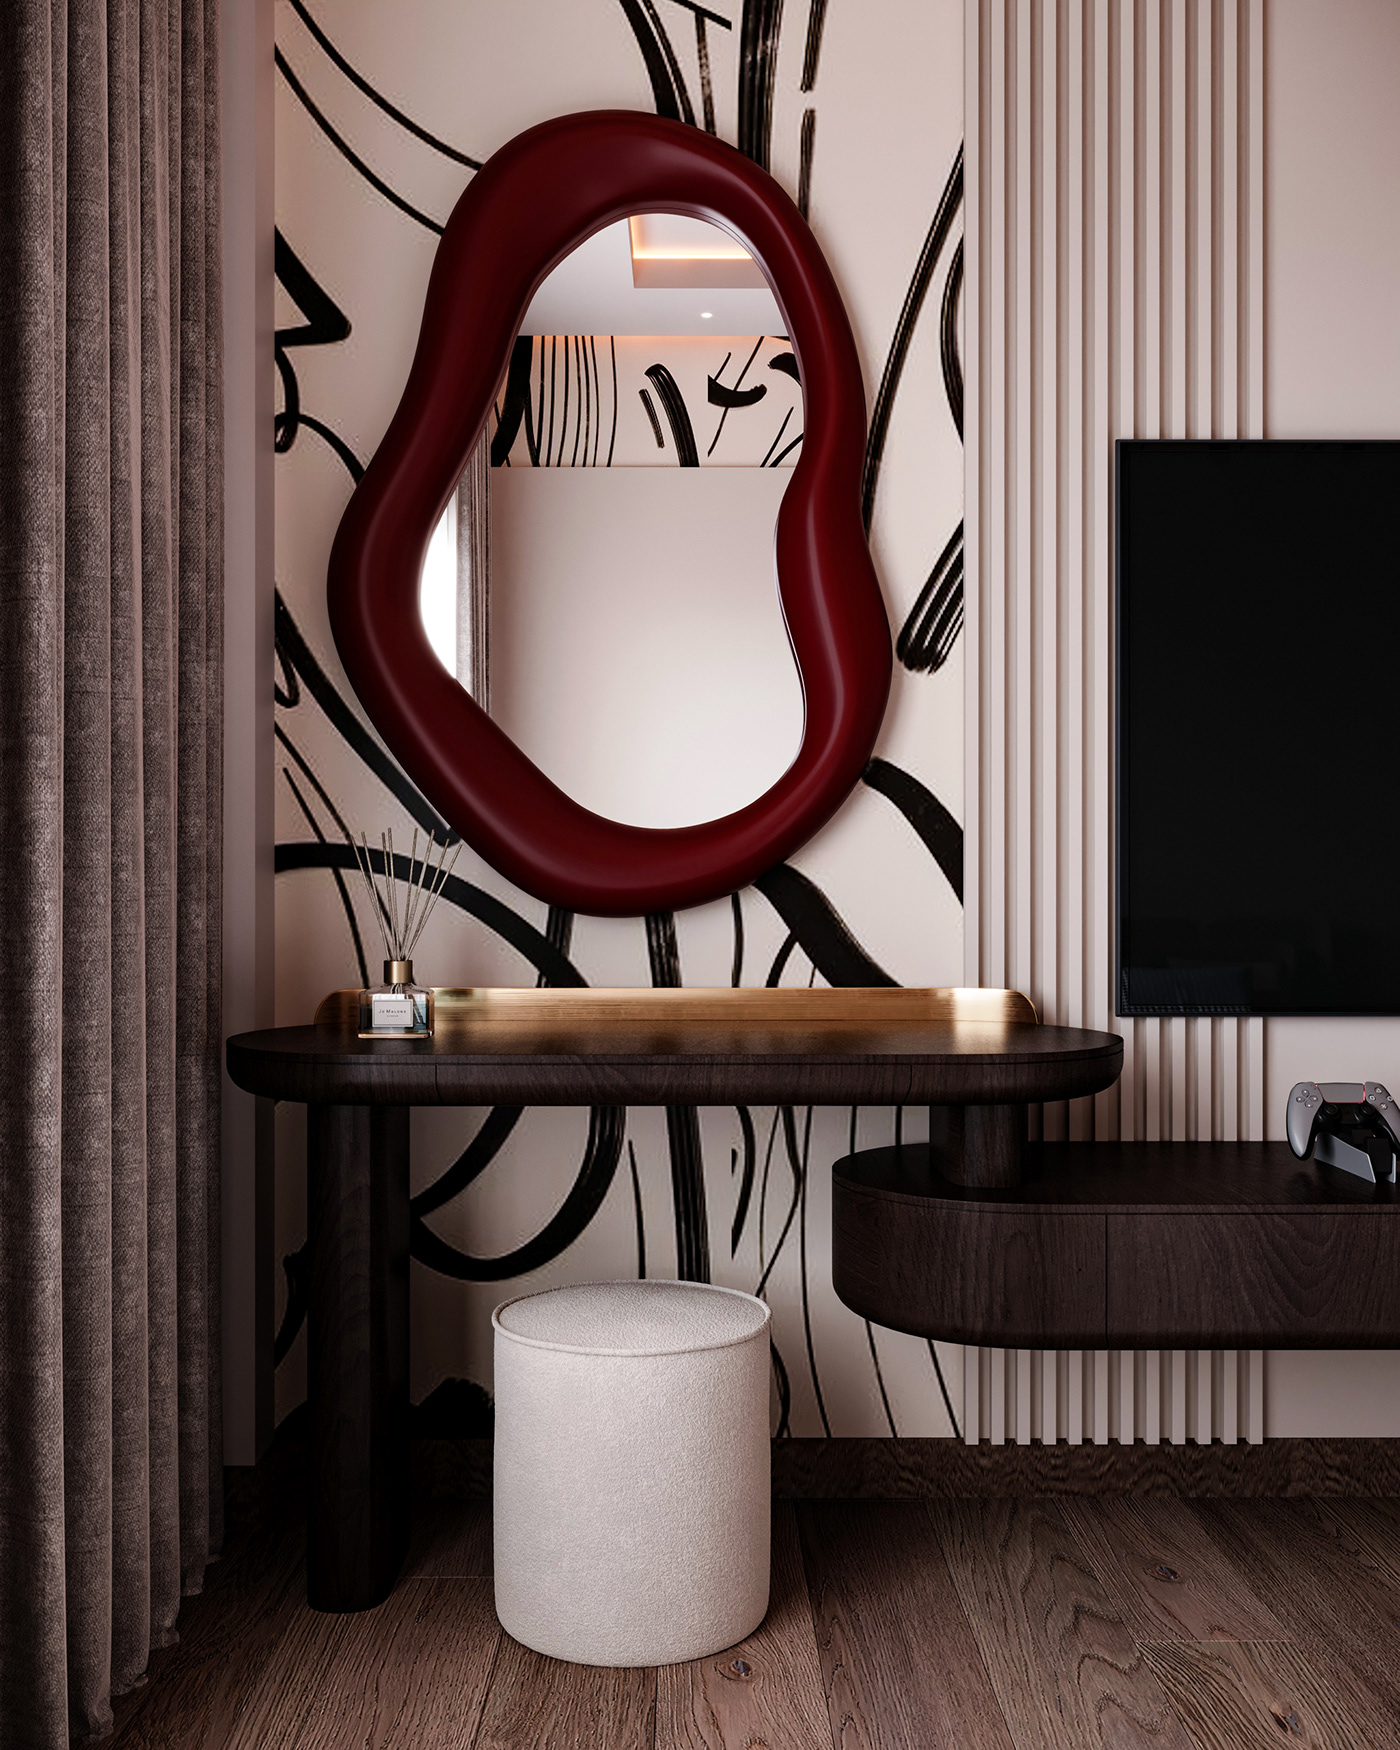 interior design  3dmaxdesign architecture visualization corona modern modeling decoracion home decor furniture